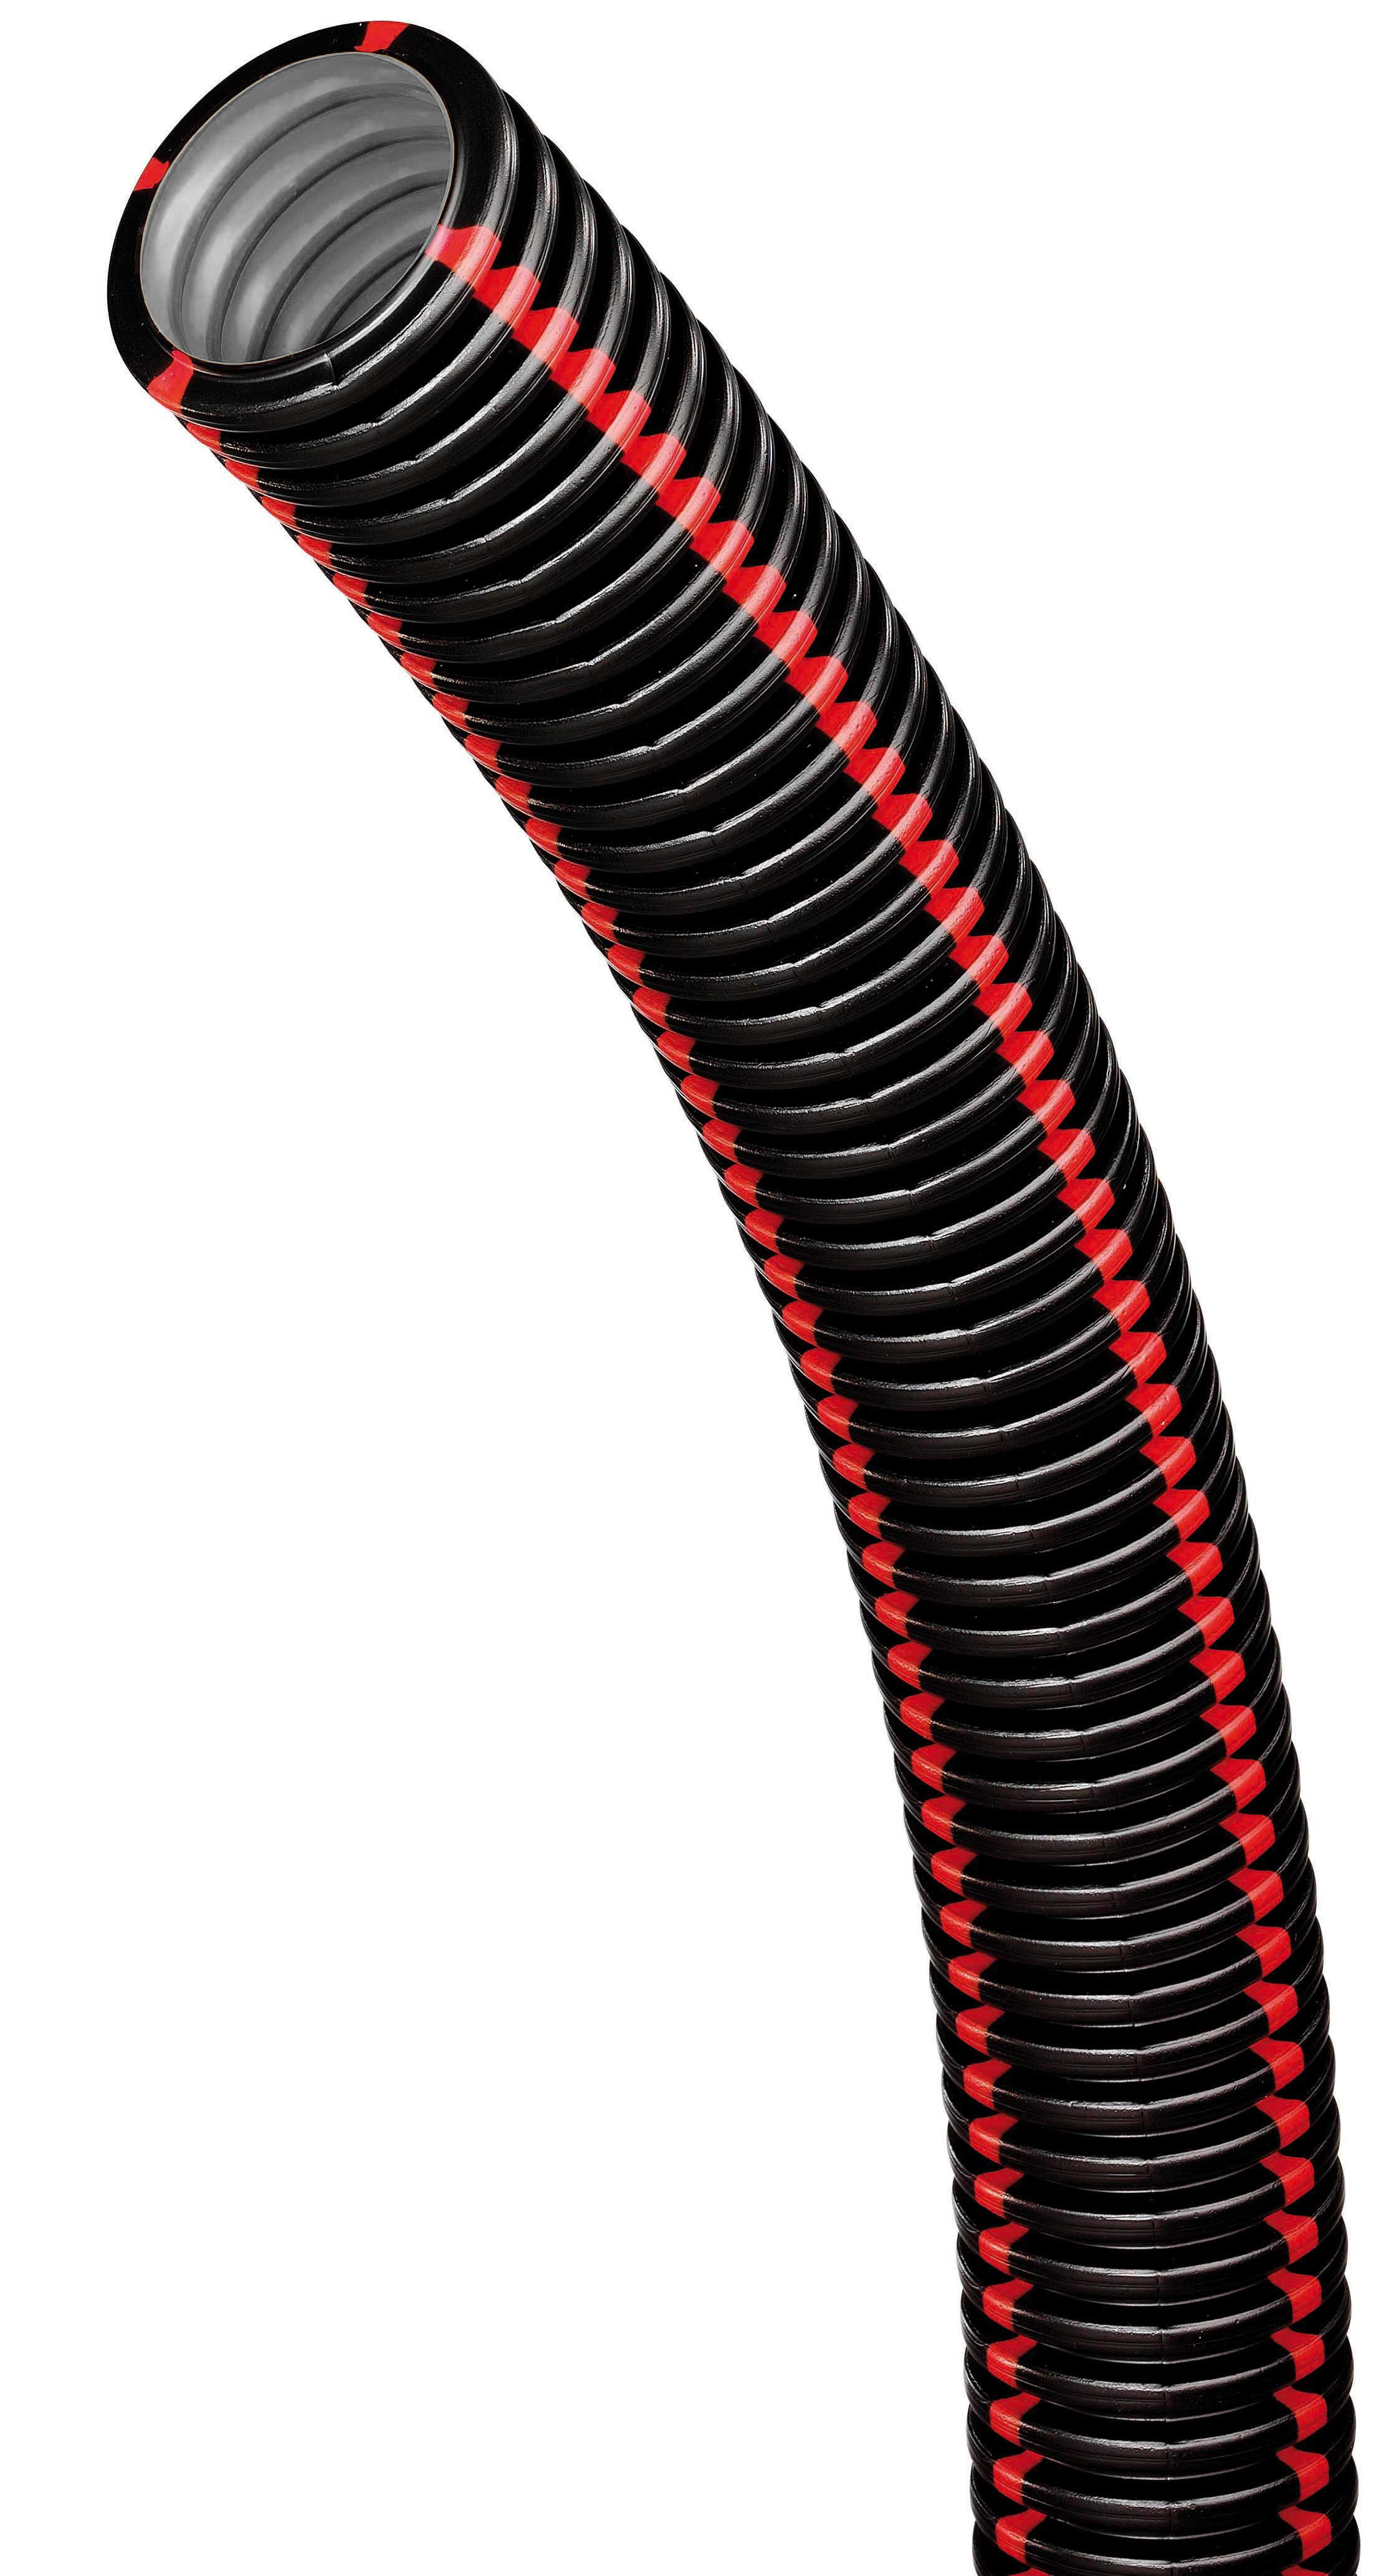 Courant - tpgliss nbr 40-50 - noir bandes rouges pour proteger les reseaux electriques